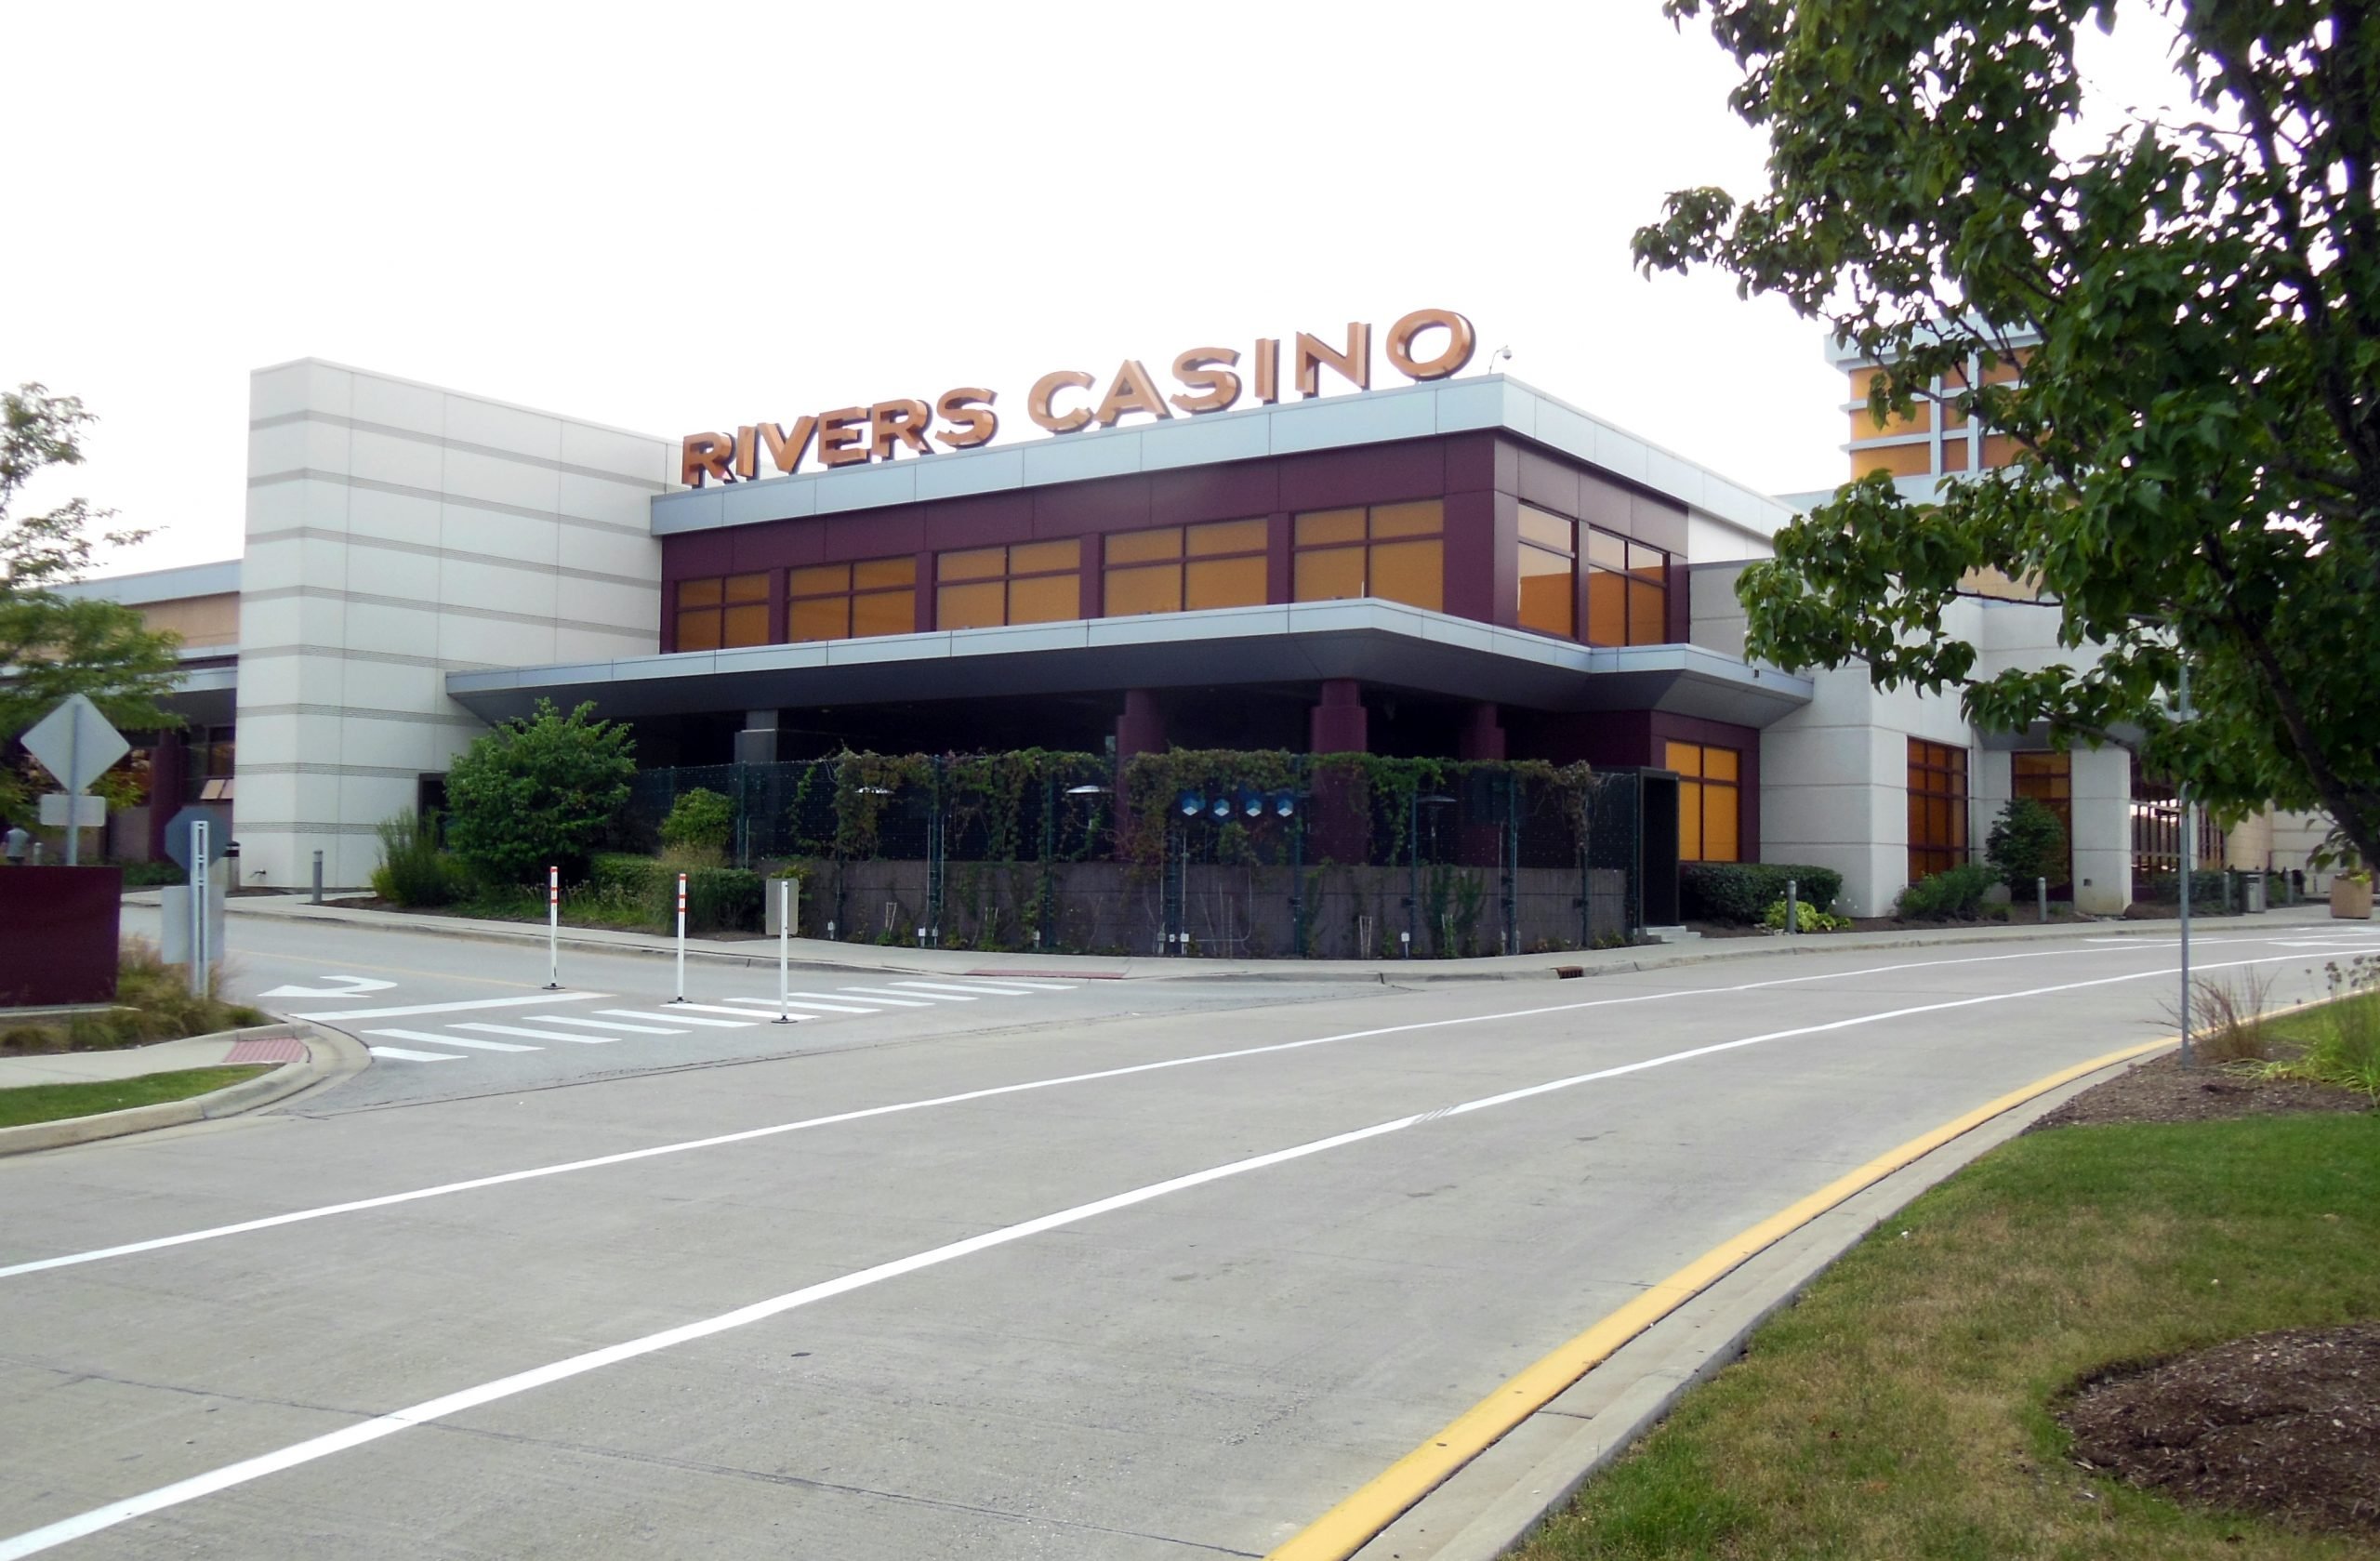 two rivers casino resort